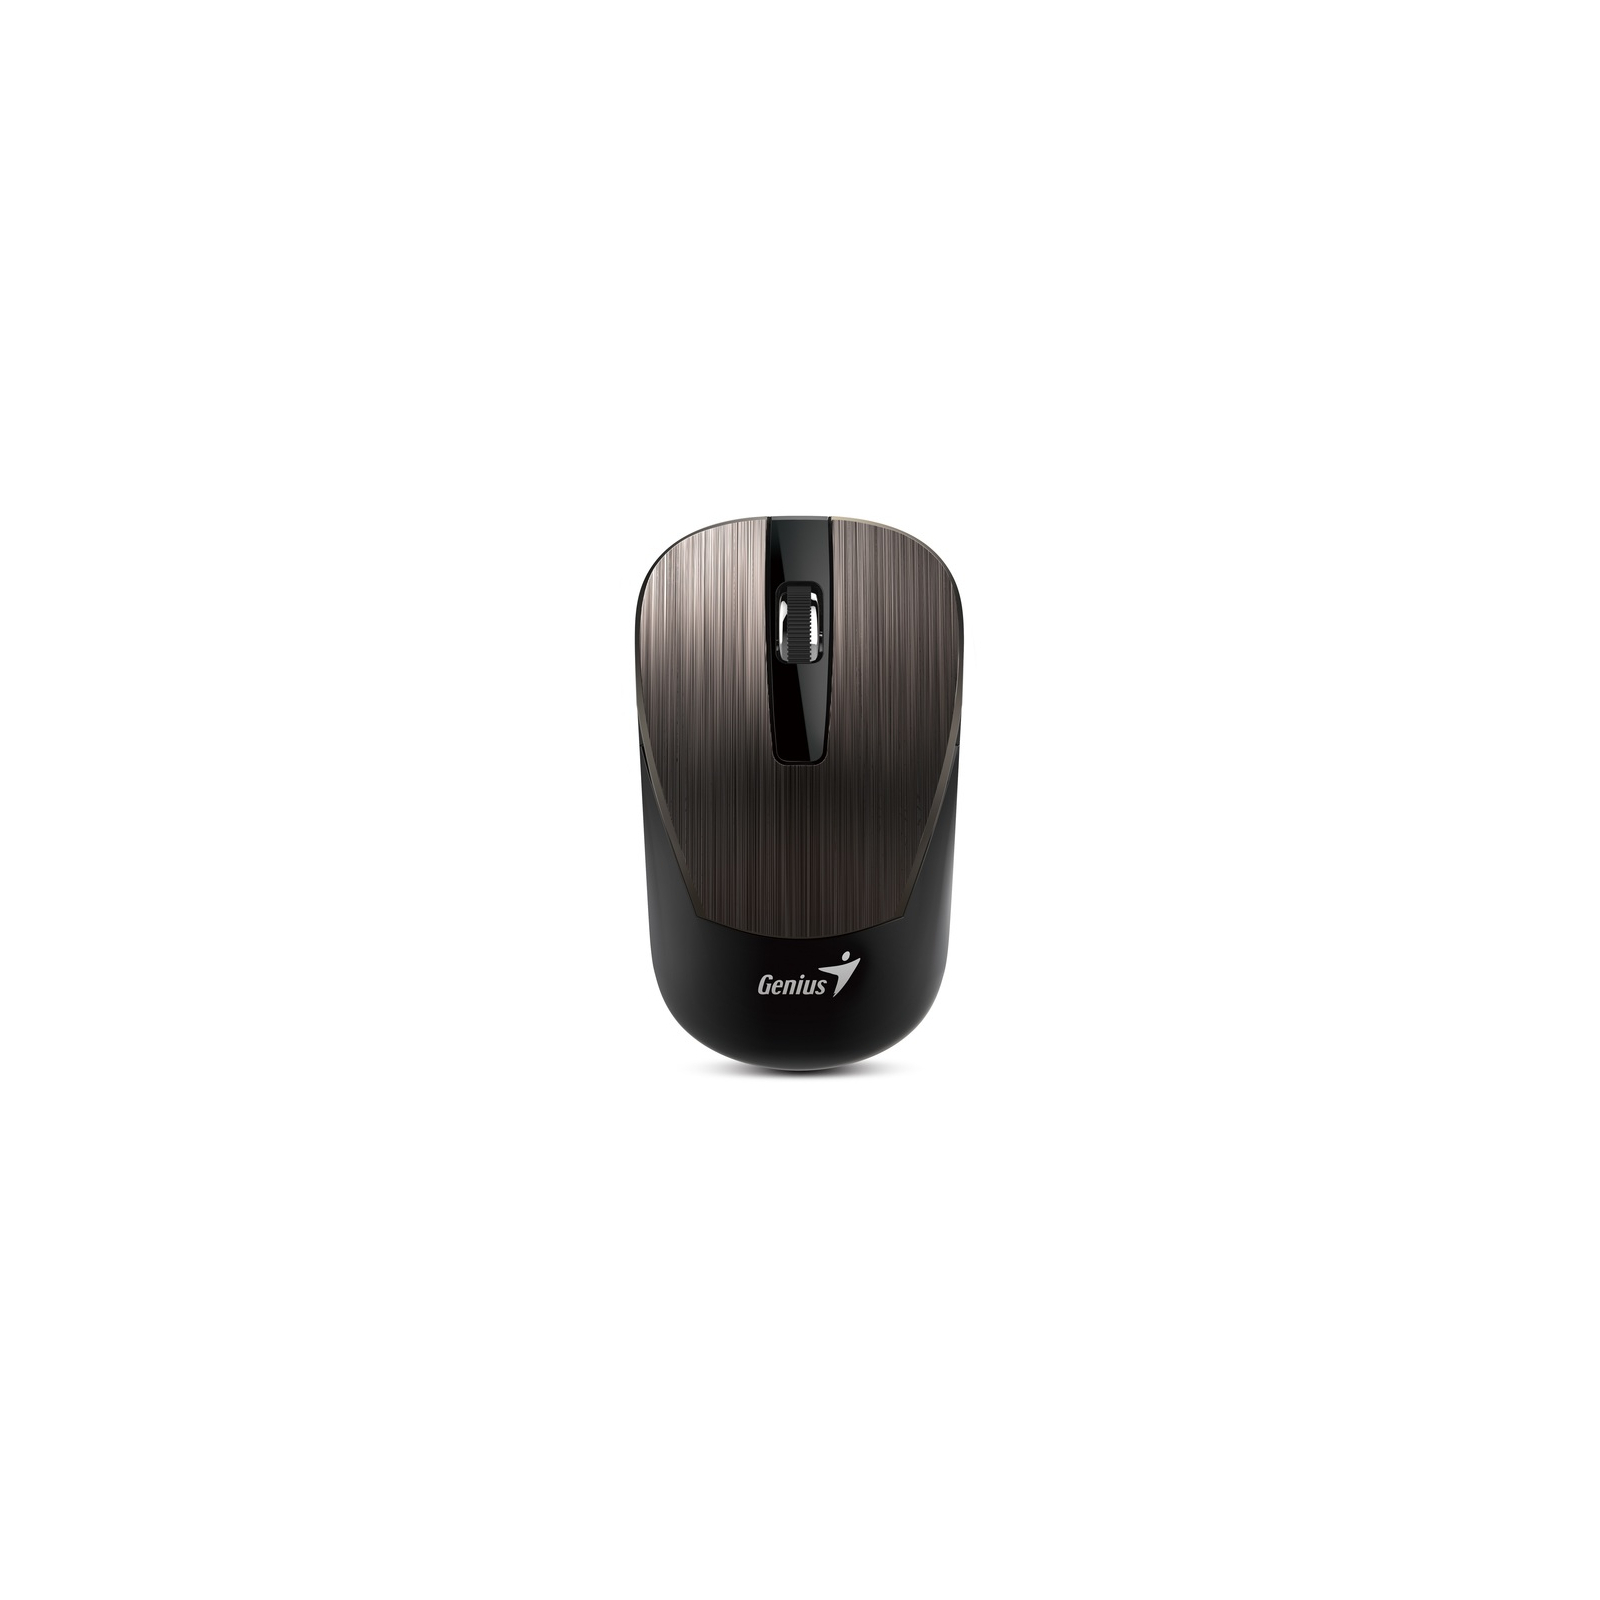 Мишка Genius NX-7015 Wireless Iron Grey (31030019400)